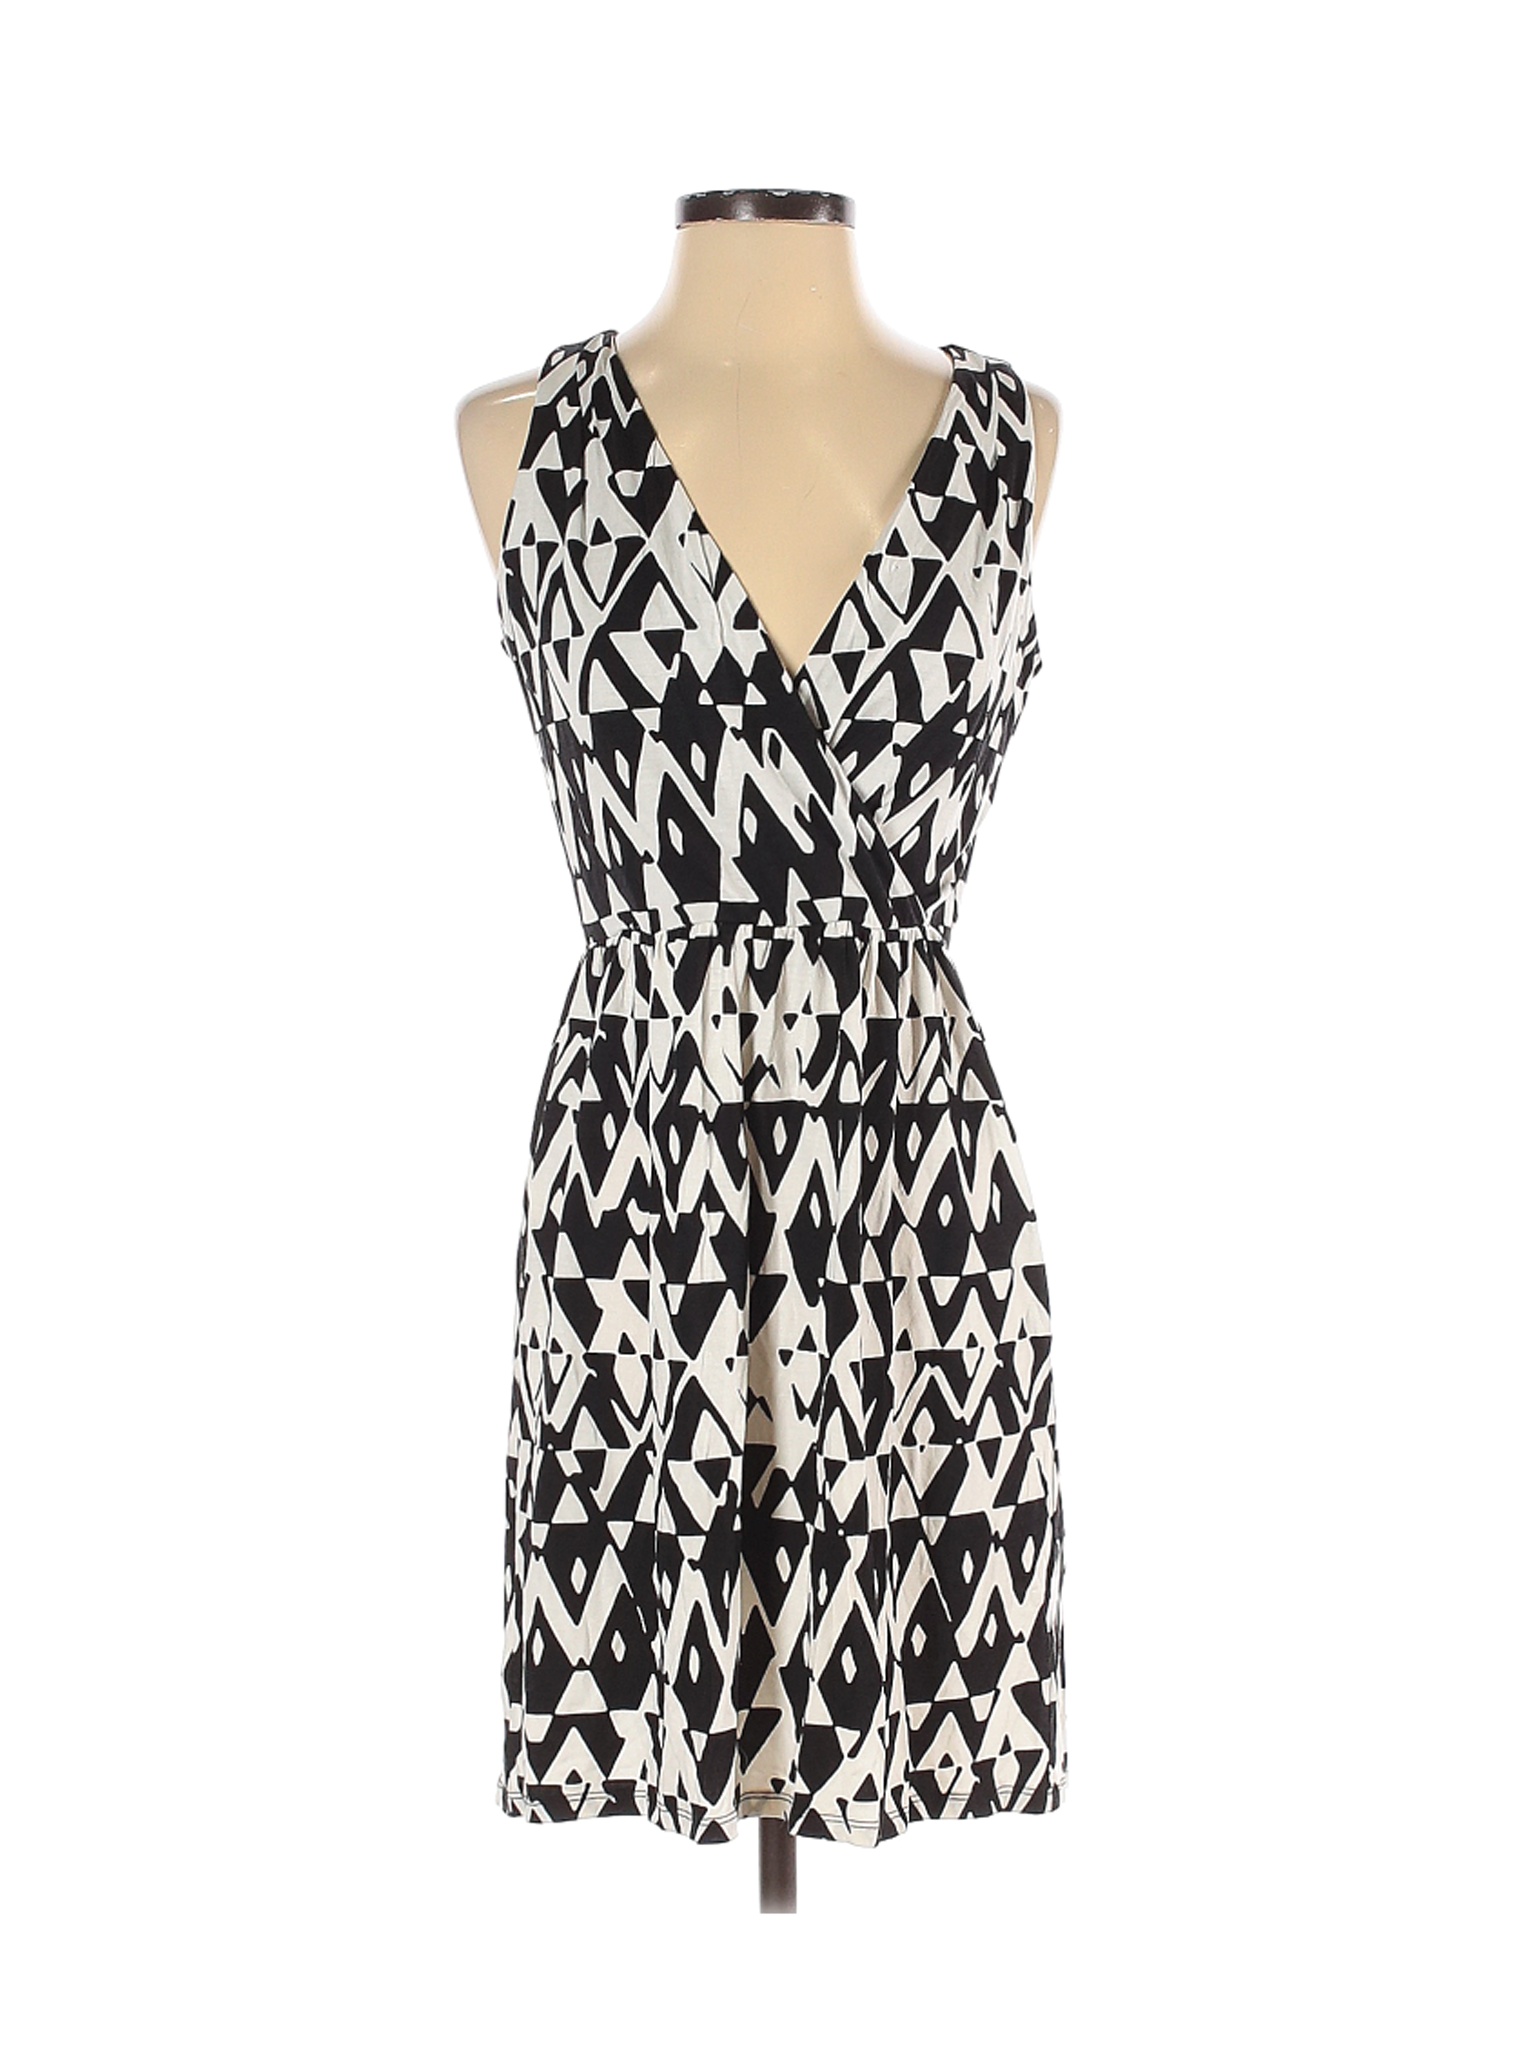 Ann Taylor LOFT Women White Casual Dress XS | eBay